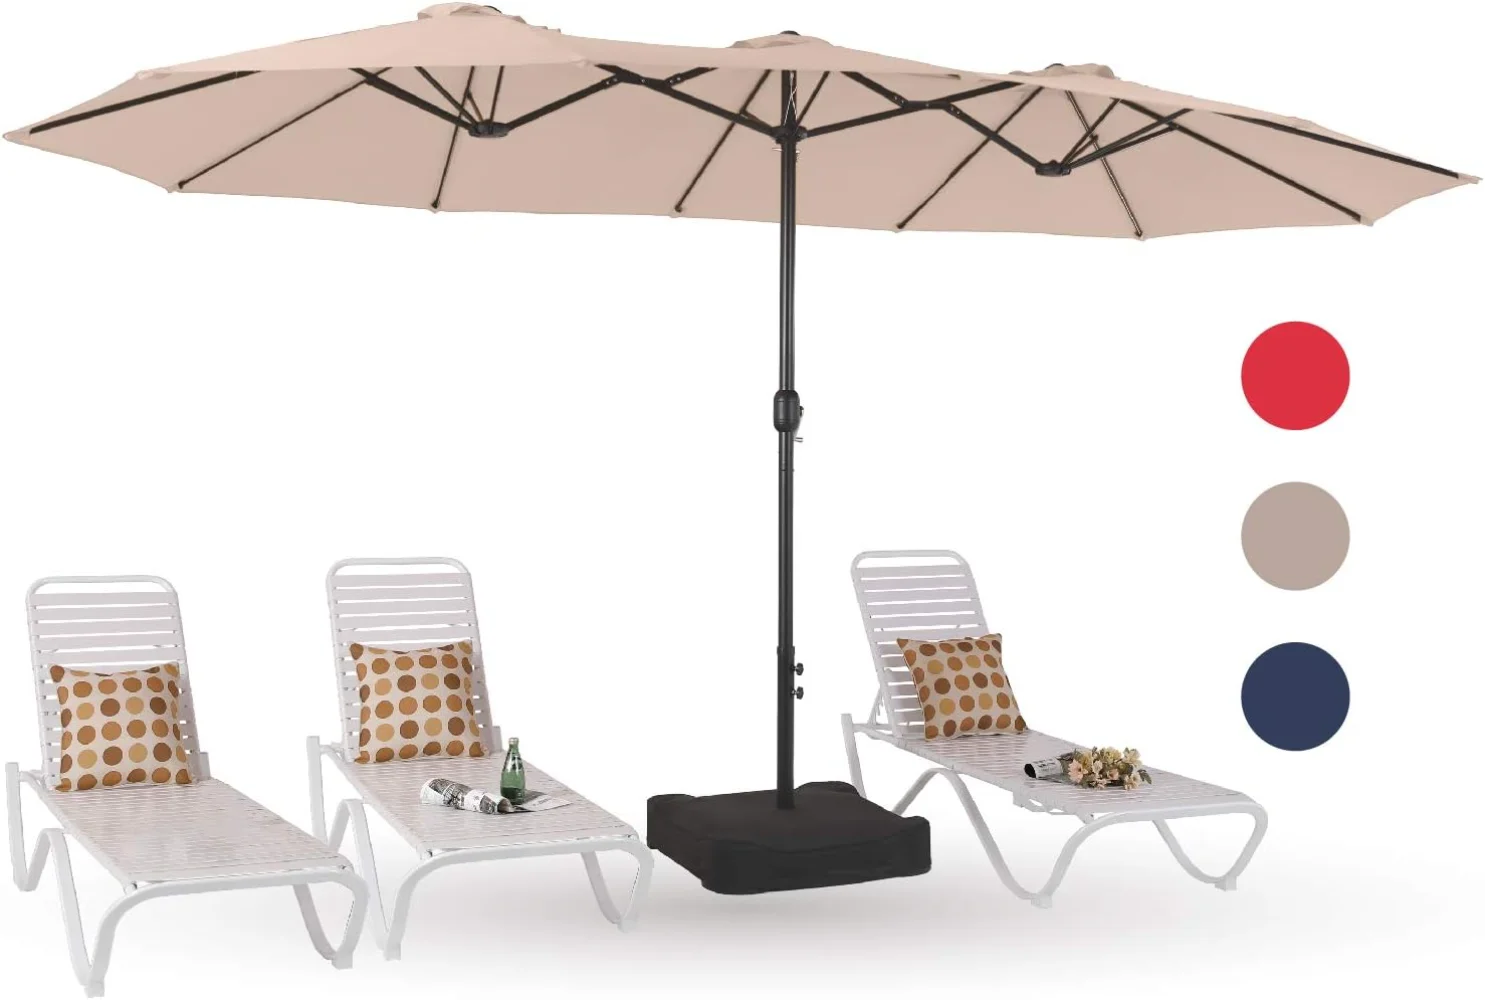 

PHI VILLA 15ft большие зонты для внутреннего дворика с основанием, открытый двусторонний прямоугольный зонтик для рынка с